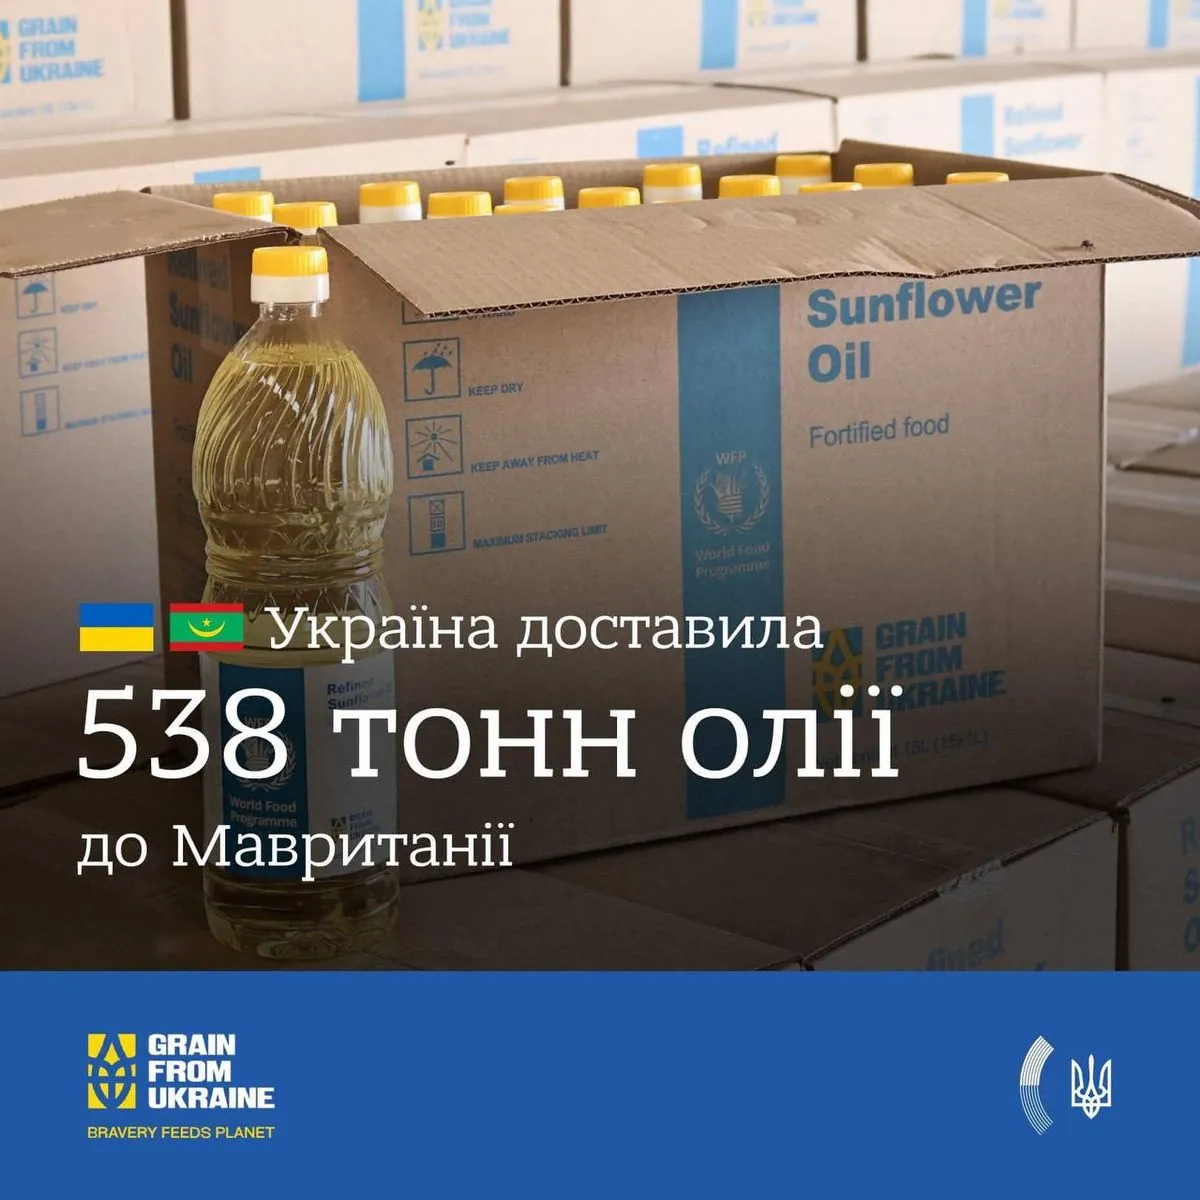 Grain from Ukraine: Україна поставила 538 тонн олії до Мавританії